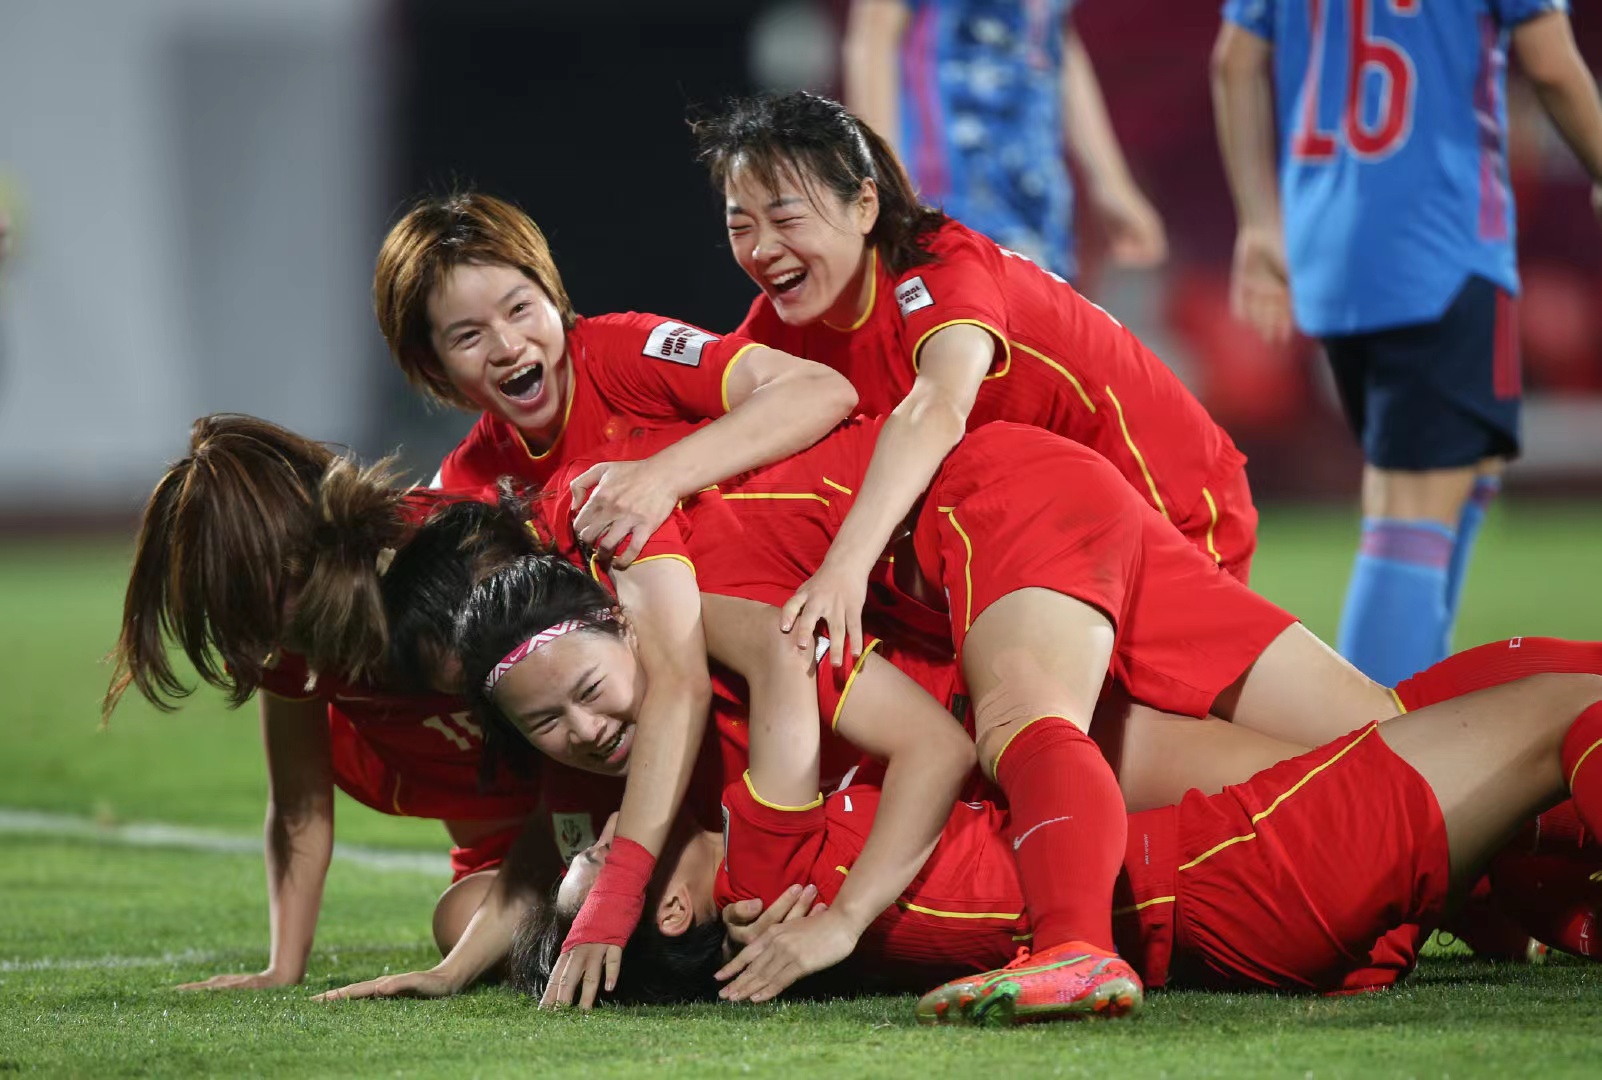 亚洲杯女足赛半决赛力克日本队，中国女足晋级决赛